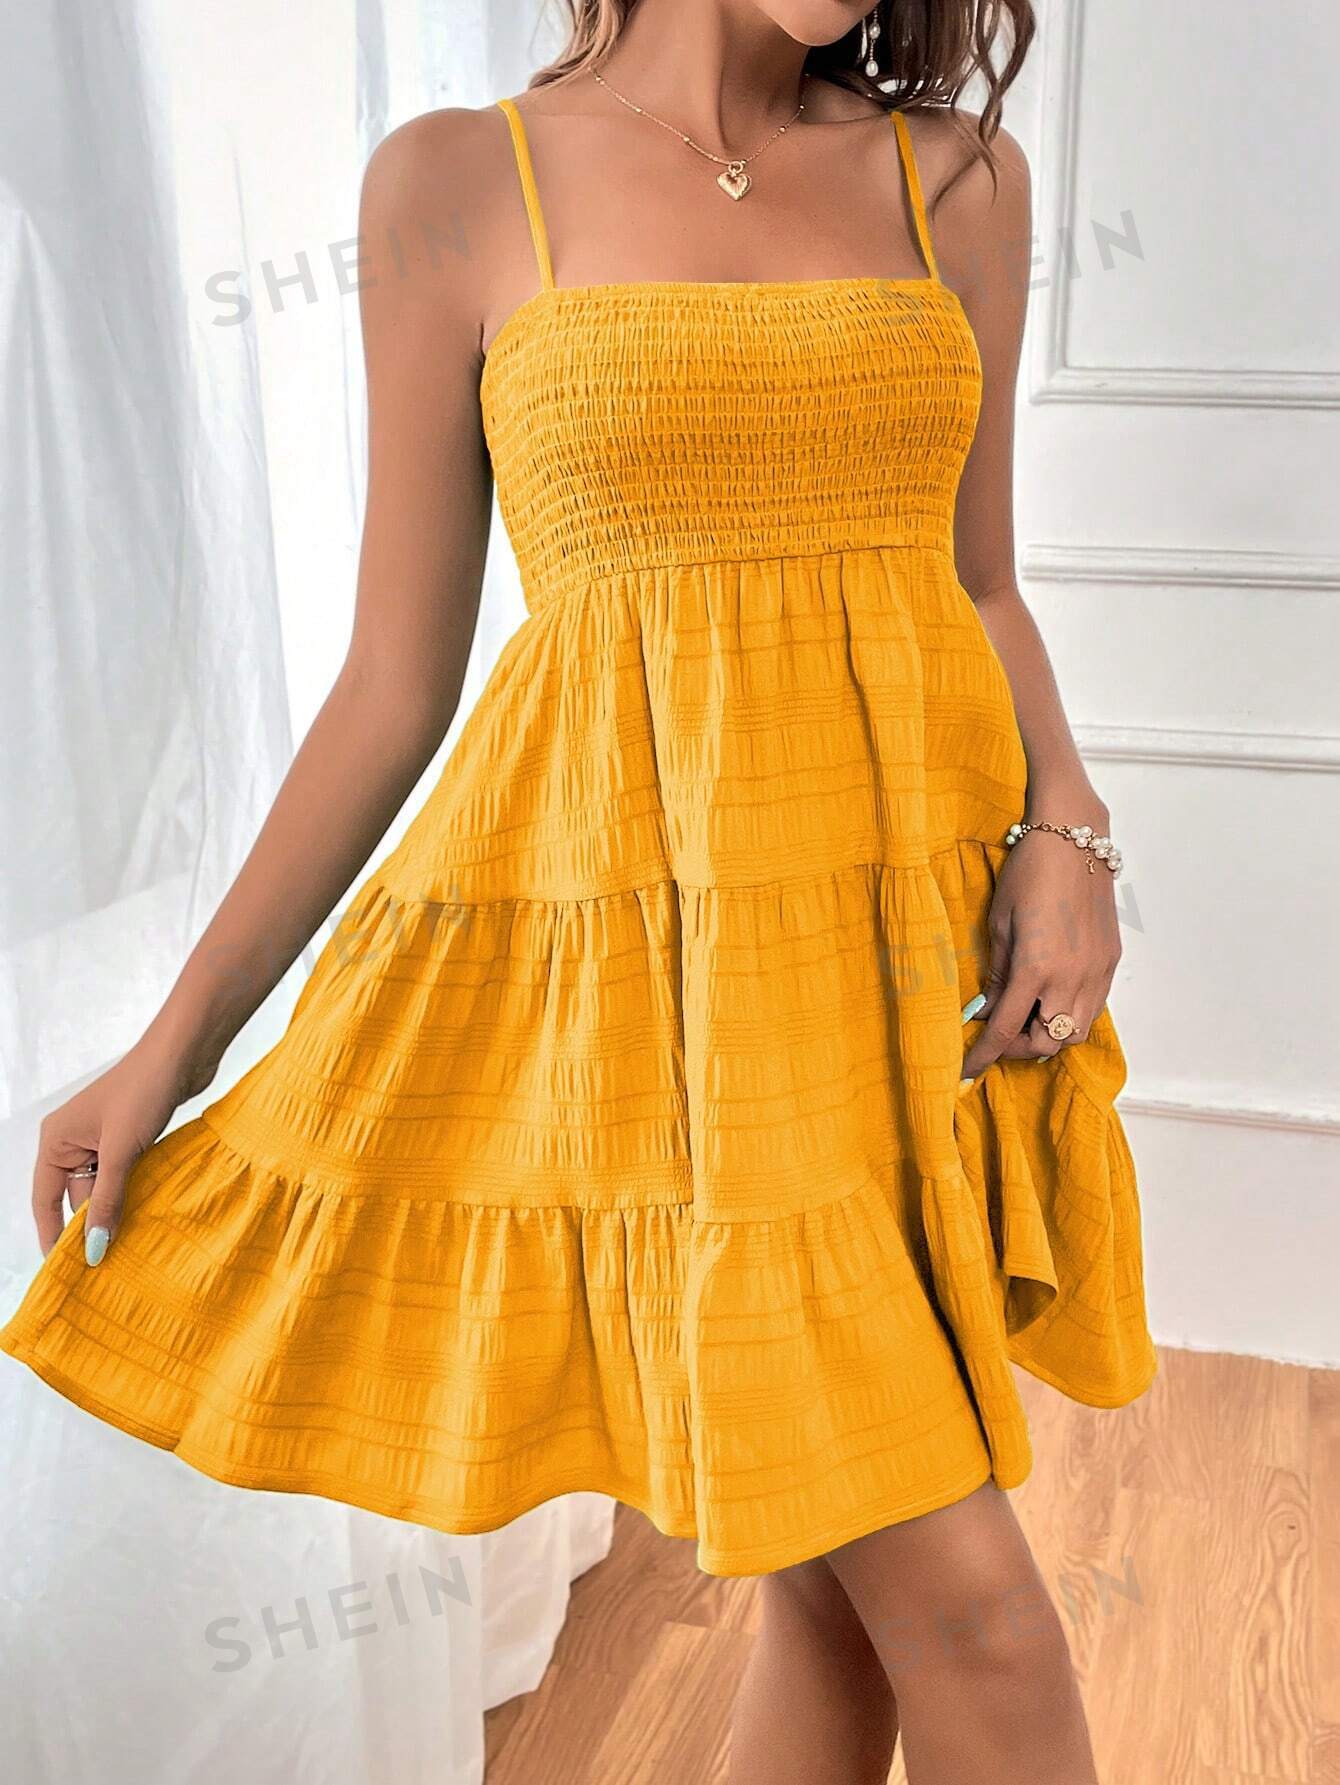 SHEIN WYWH Женское однотонное платье на тонких бретельках с оборками и подолом, горчично-желтый фото